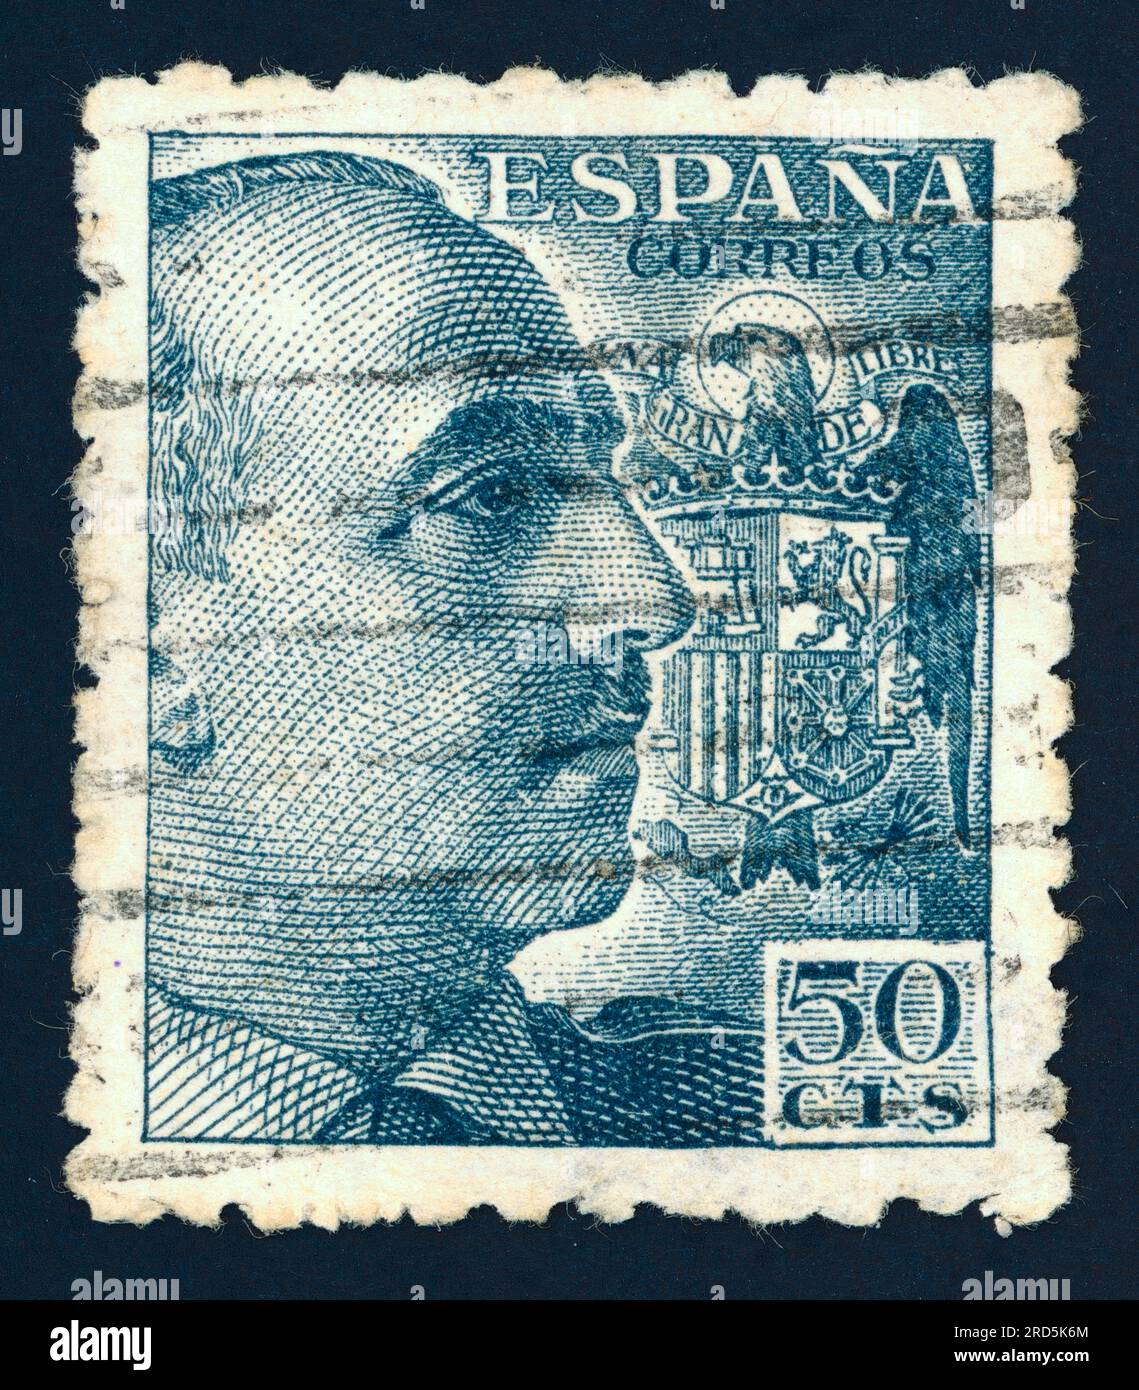 General Franco (Francisco Franco Bahamonde), (1892 – 1975). Postage stamp issued in Spain in Stock Photo